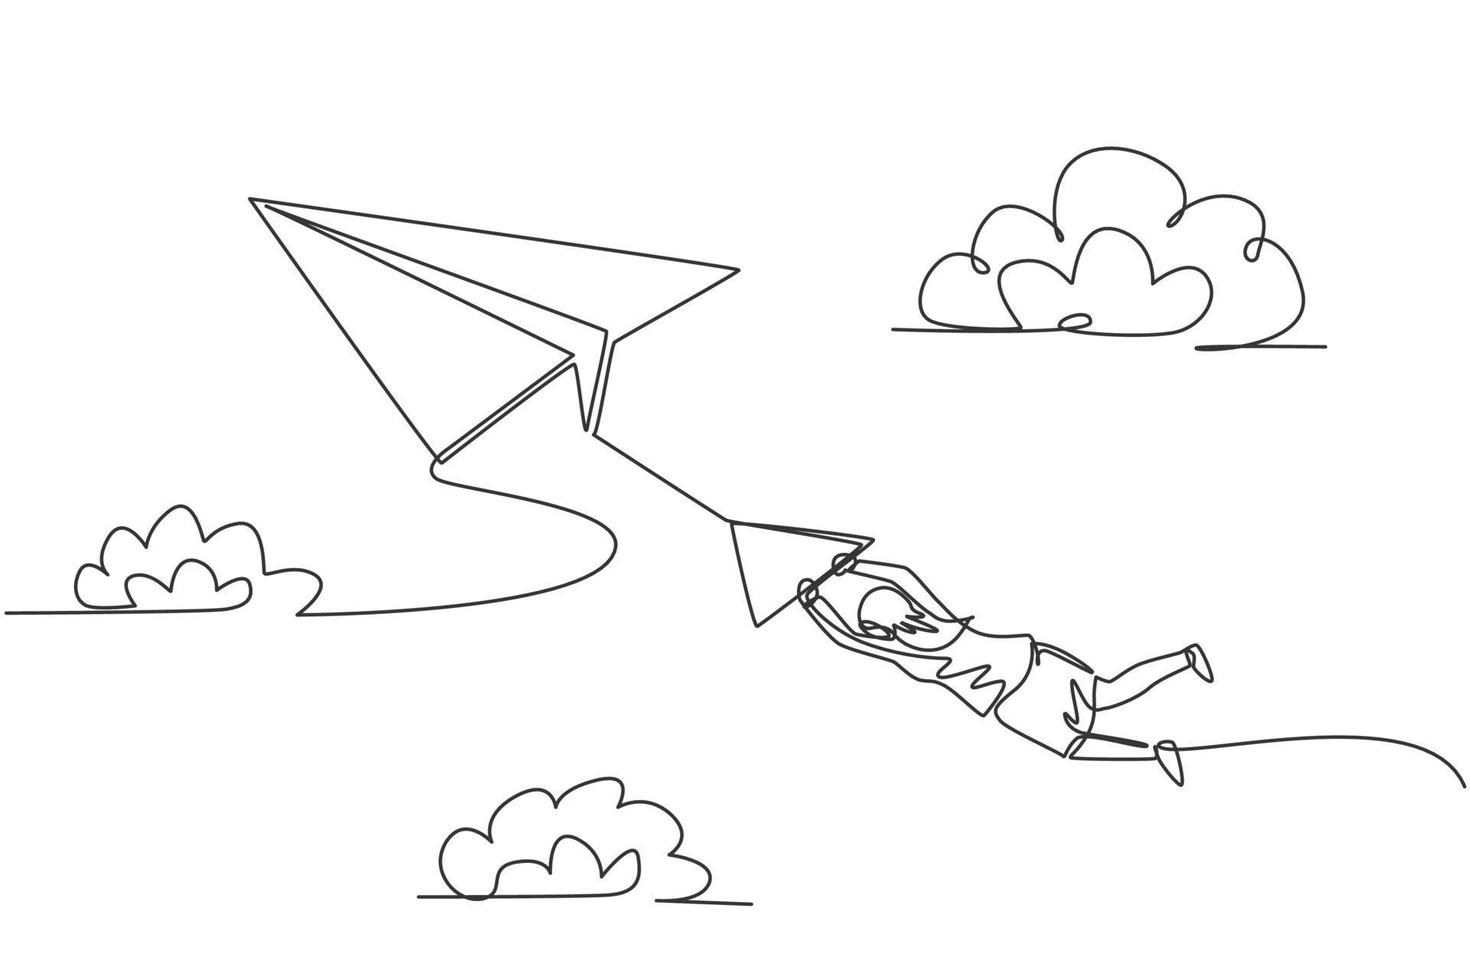 dibujo de una sola línea de joven empresaria colgando de un avión de papel volador. obstáculo y desafío empresarial. concepto mínimo de metáfora. Ilustración de vector gráfico de diseño de dibujo de línea continua moderna